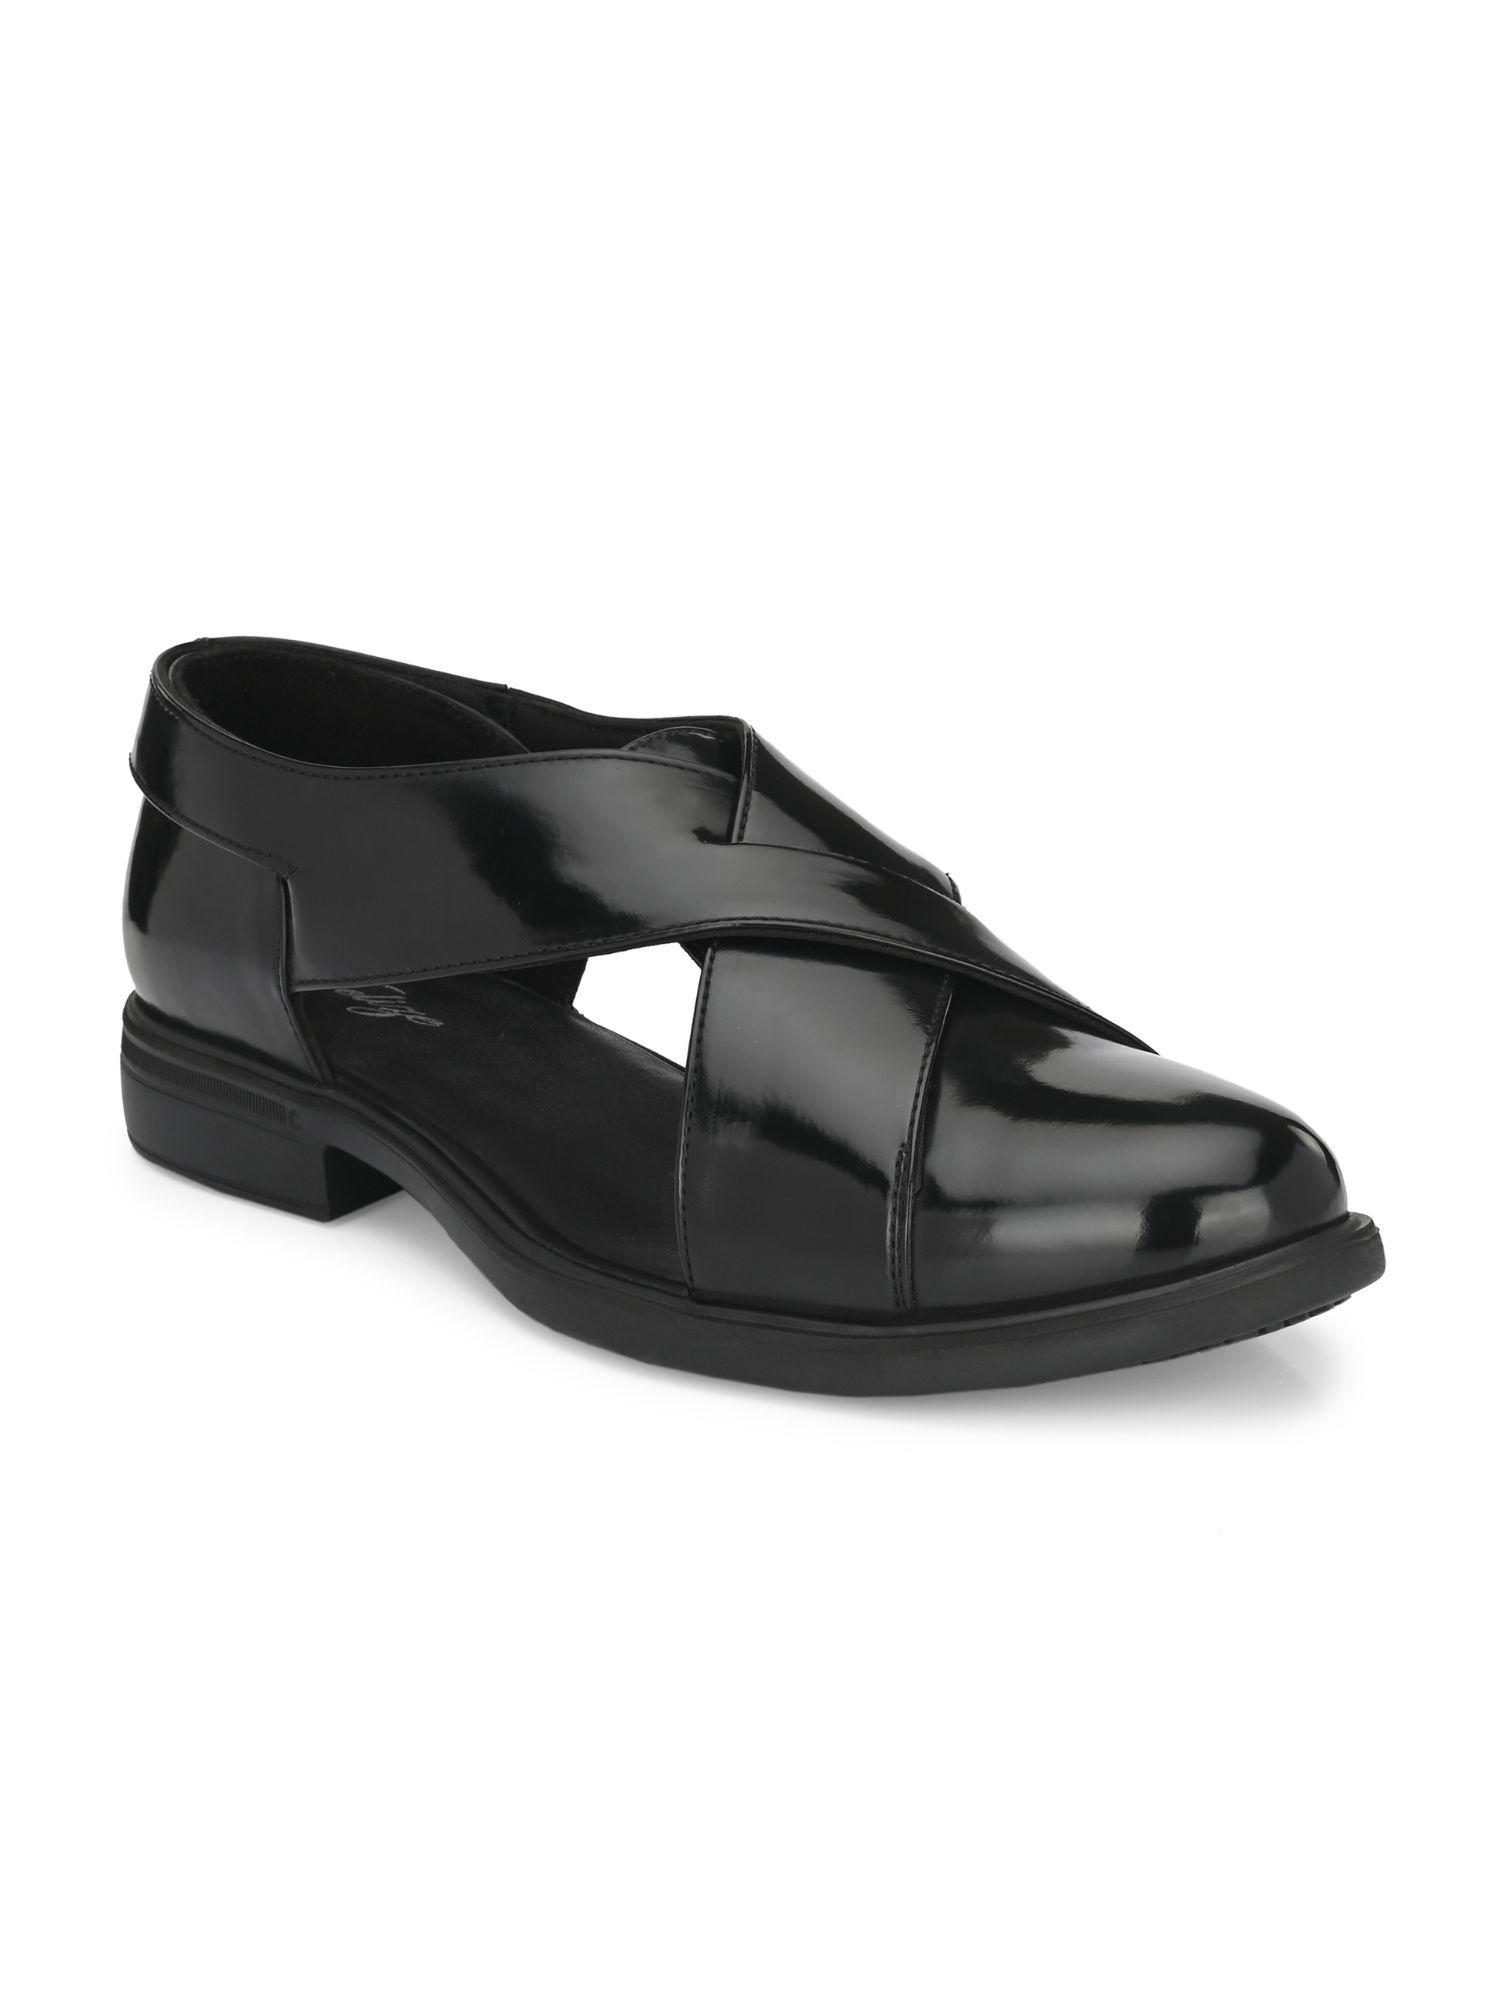 mens-black-solid-roman-casual-sandals